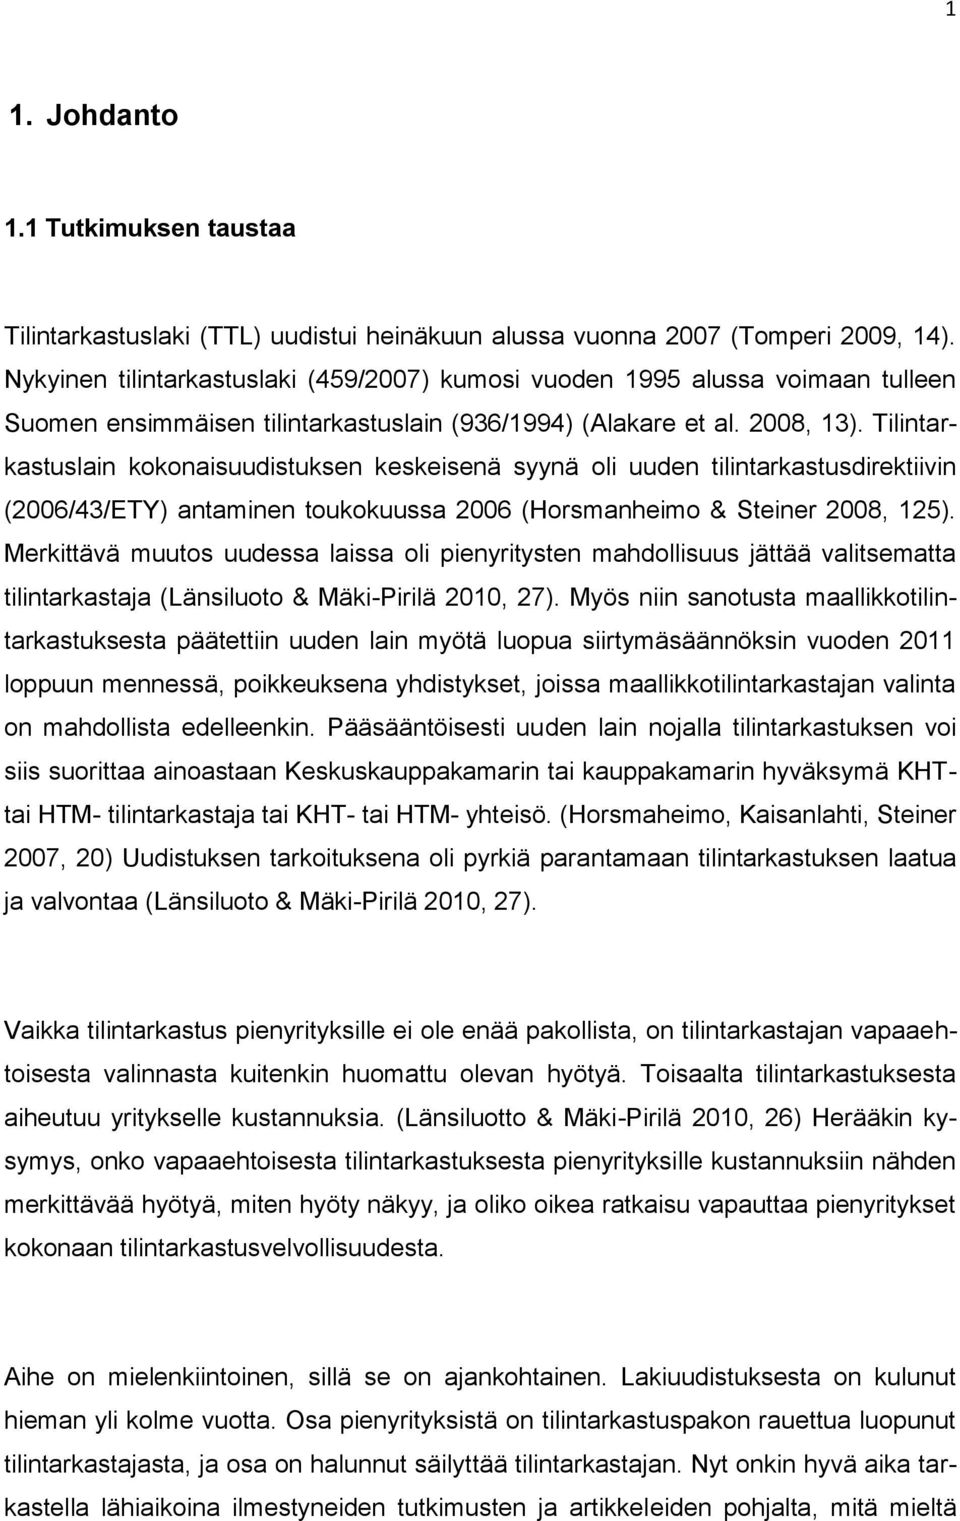 Tilintarkastuslain kokonaisuudistuksen keskeisenä syynä oli uuden tilintarkastusdirektiivin (2006/43/ETY) antaminen toukokuussa 2006 (Horsmanheimo & Steiner 2008, 125).